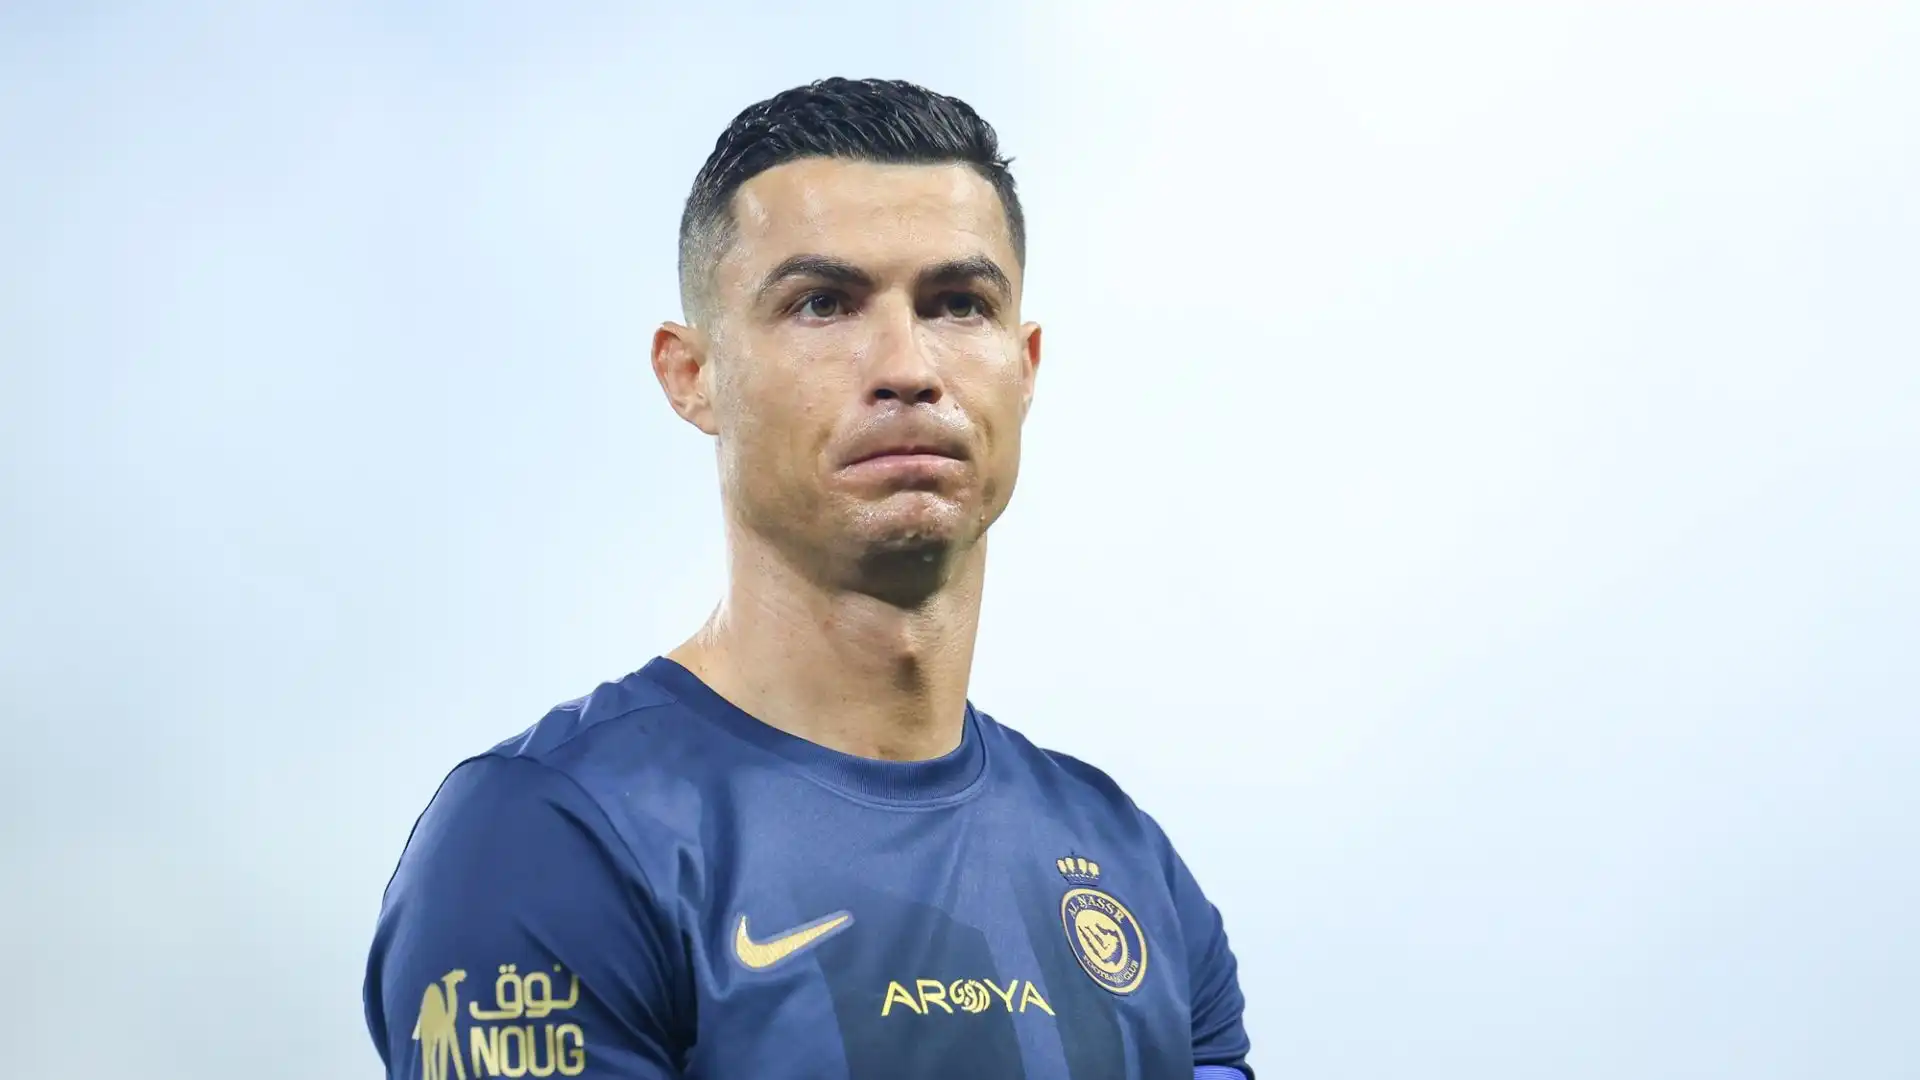 Niente tourneé in Cina per l'Al-Nassr di Cristiano Ronaldo